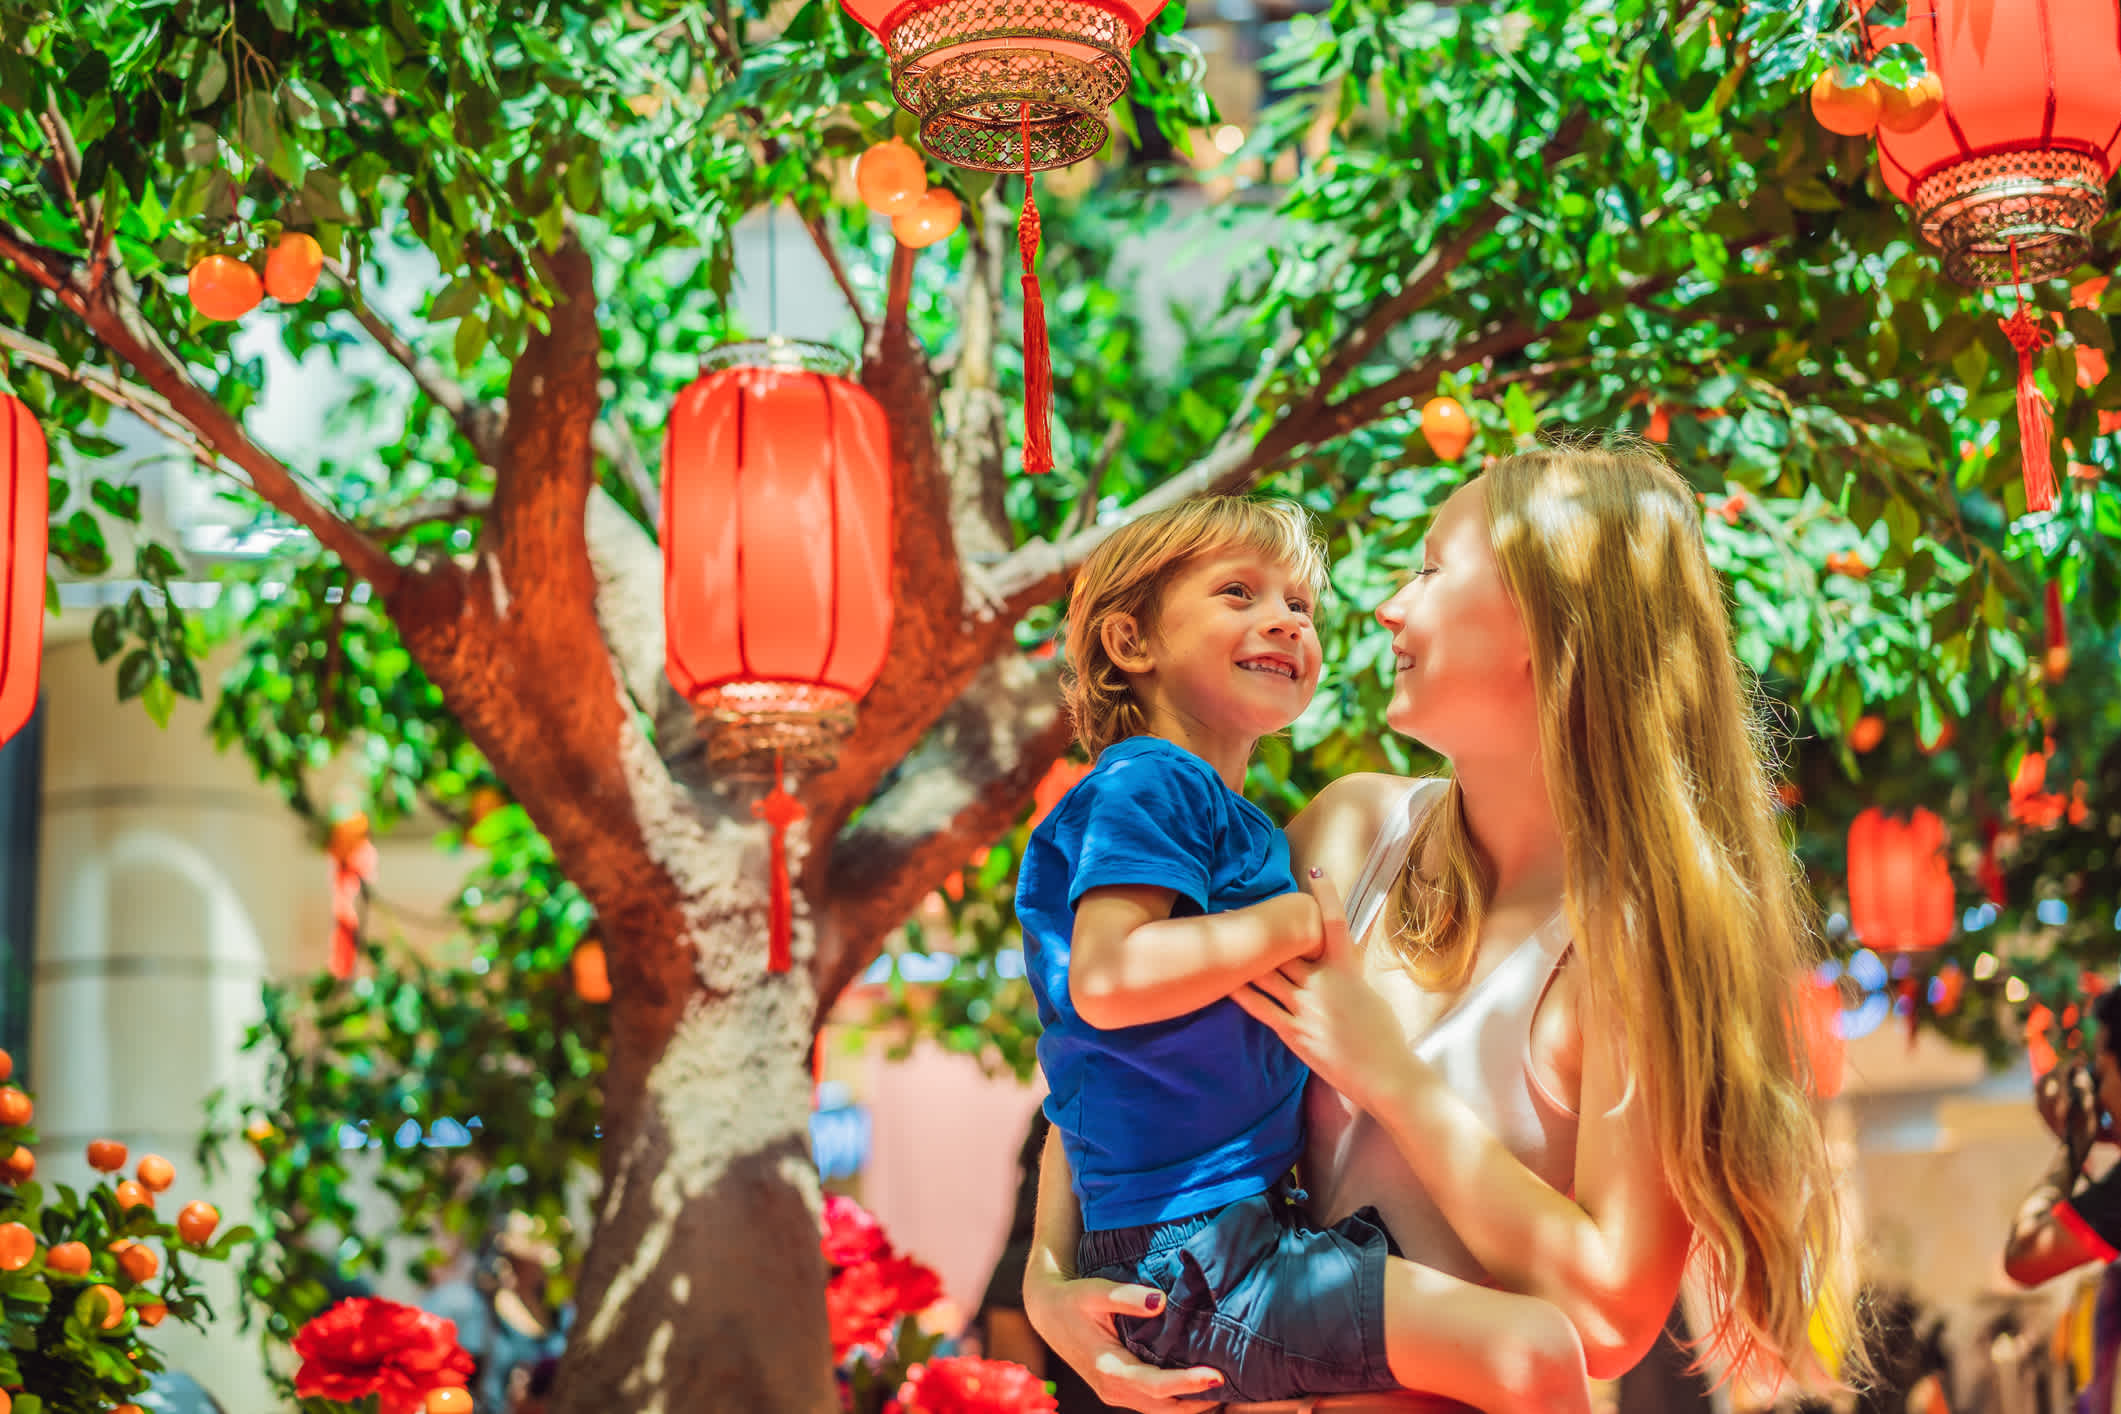 Maman et son enfant sous les lanternes rouges chinoises.

